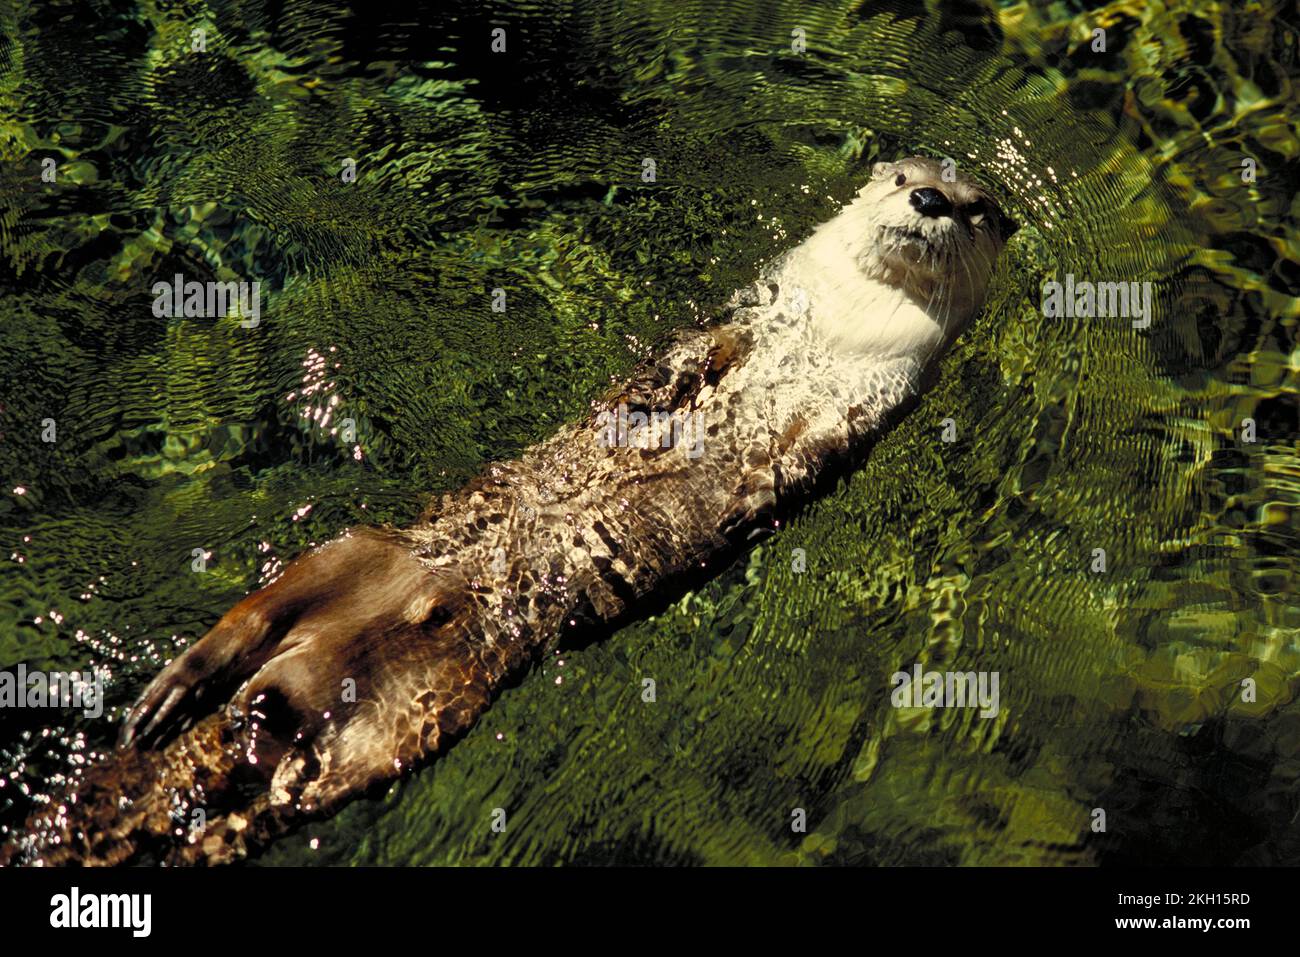 A River Otter, Lontra canadensis, nage en eau propre Banque D'Images